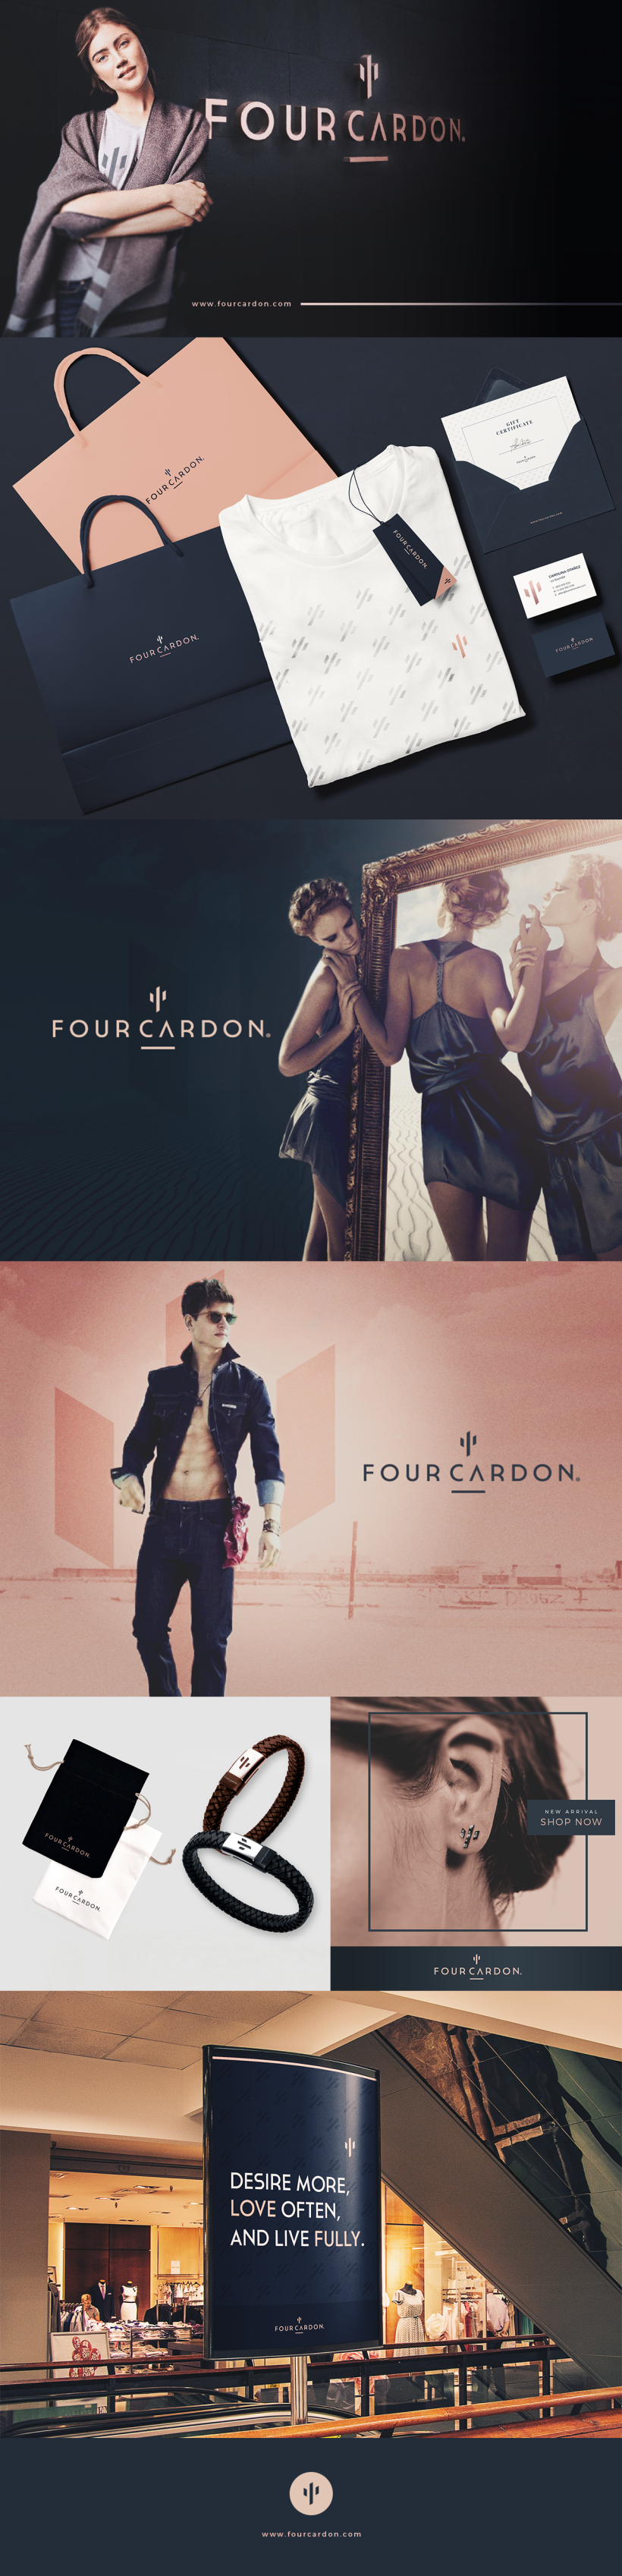 Four Cardon | Diseño de Identidad 0